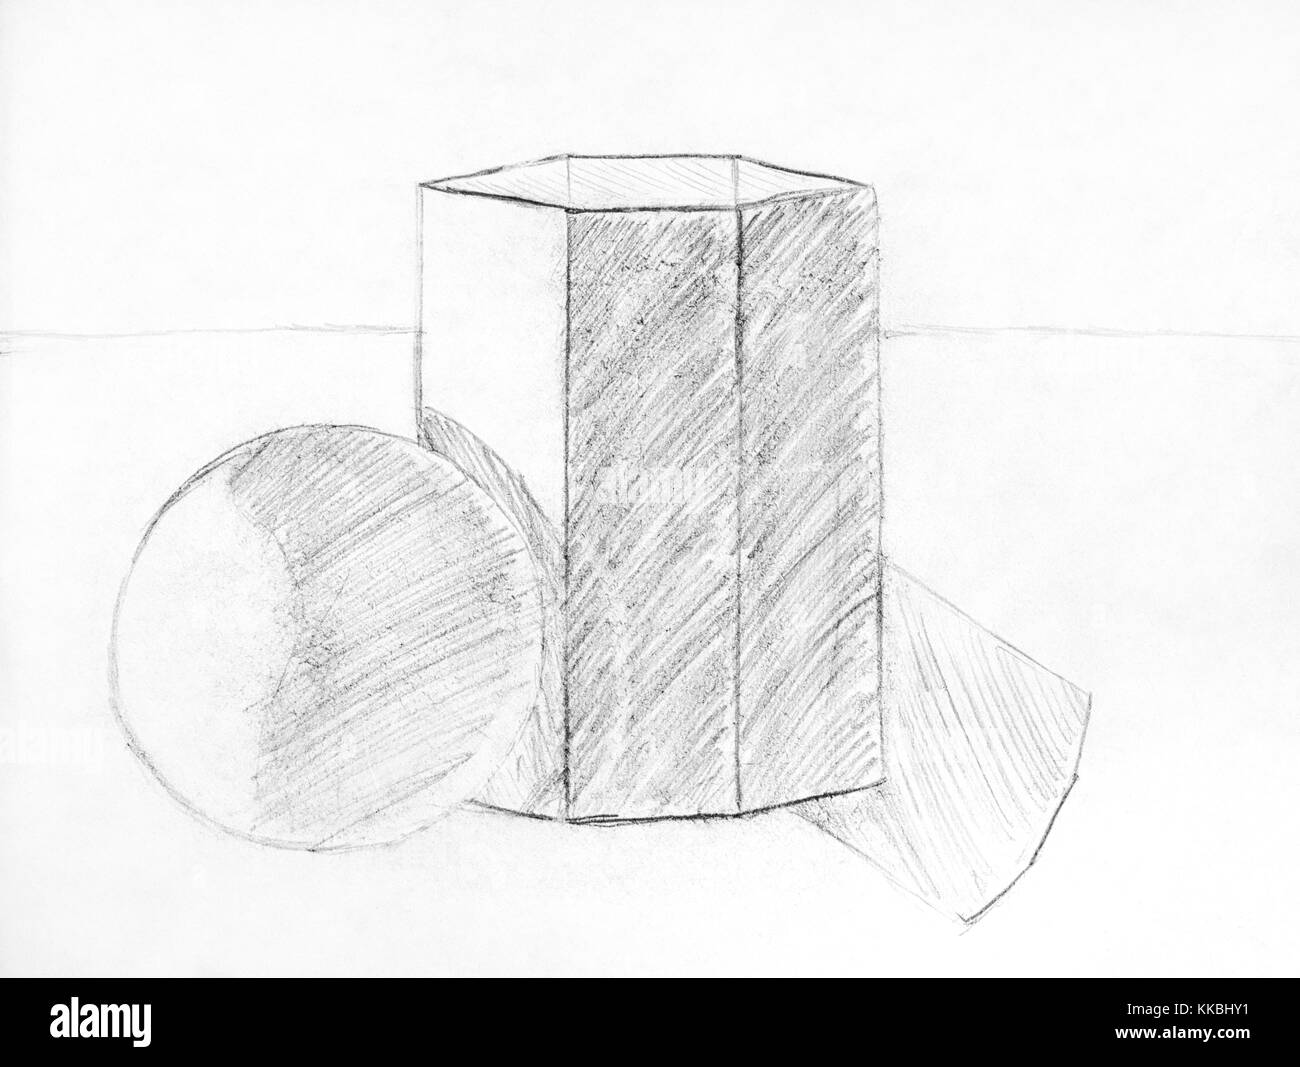 Enfant dessin au crayon de figures géométriques- sphère et hexaèdre. close-up. Banque D'Images